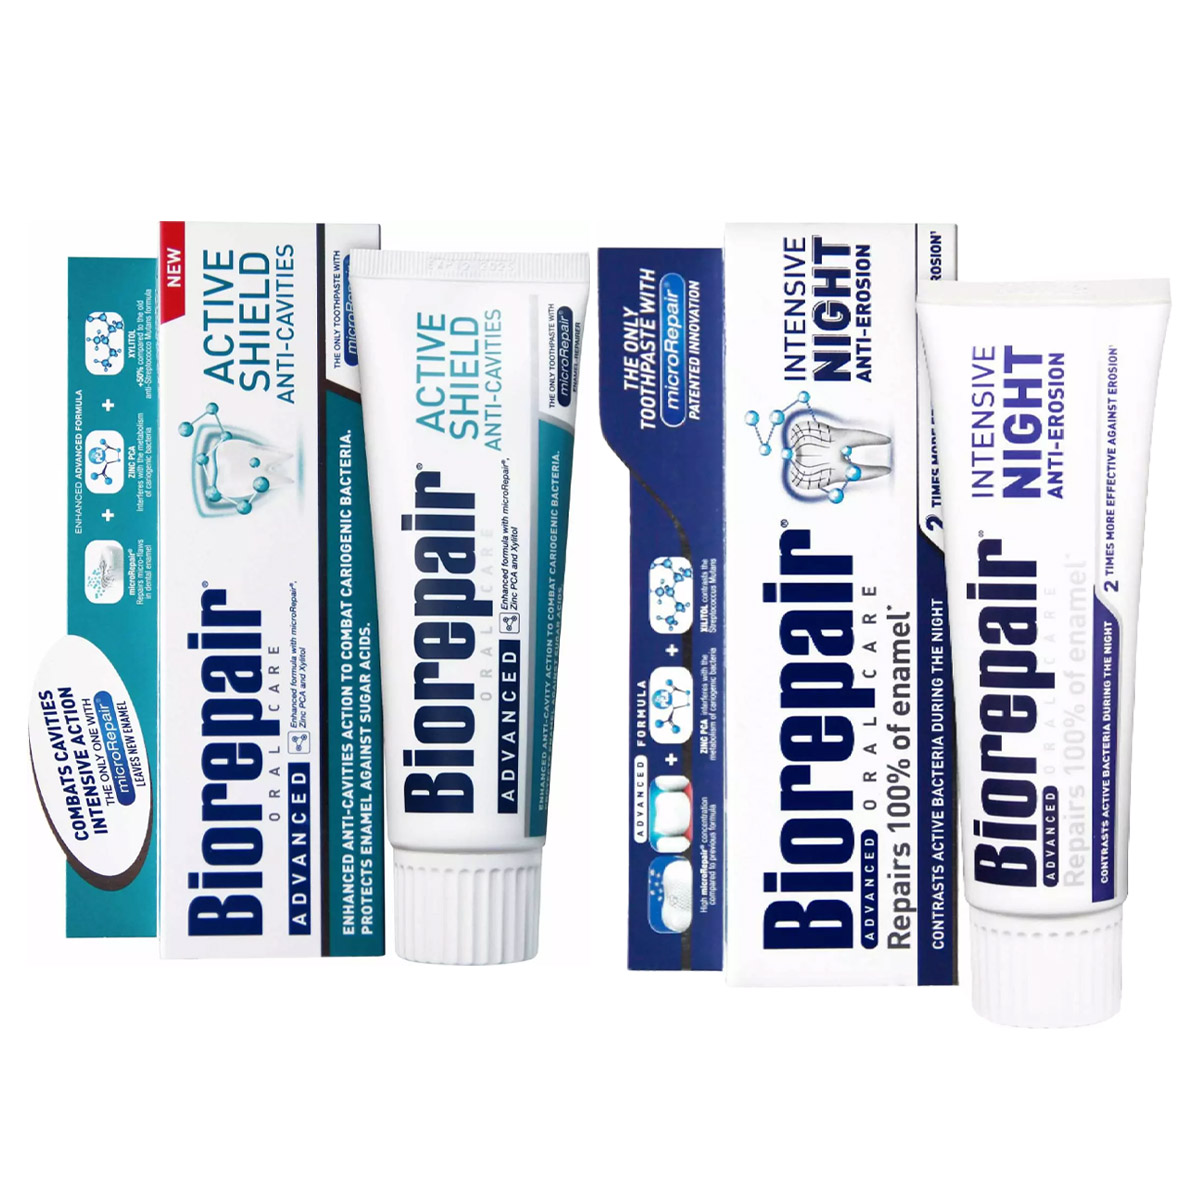 Biorepair Набор зубных паст для защиты эмали, 2х75 мл (Biorepair, Отбеливание и лечение) biorepair набор зубных паст для защиты эмали 2х75 мл biorepair отбеливание и лечение